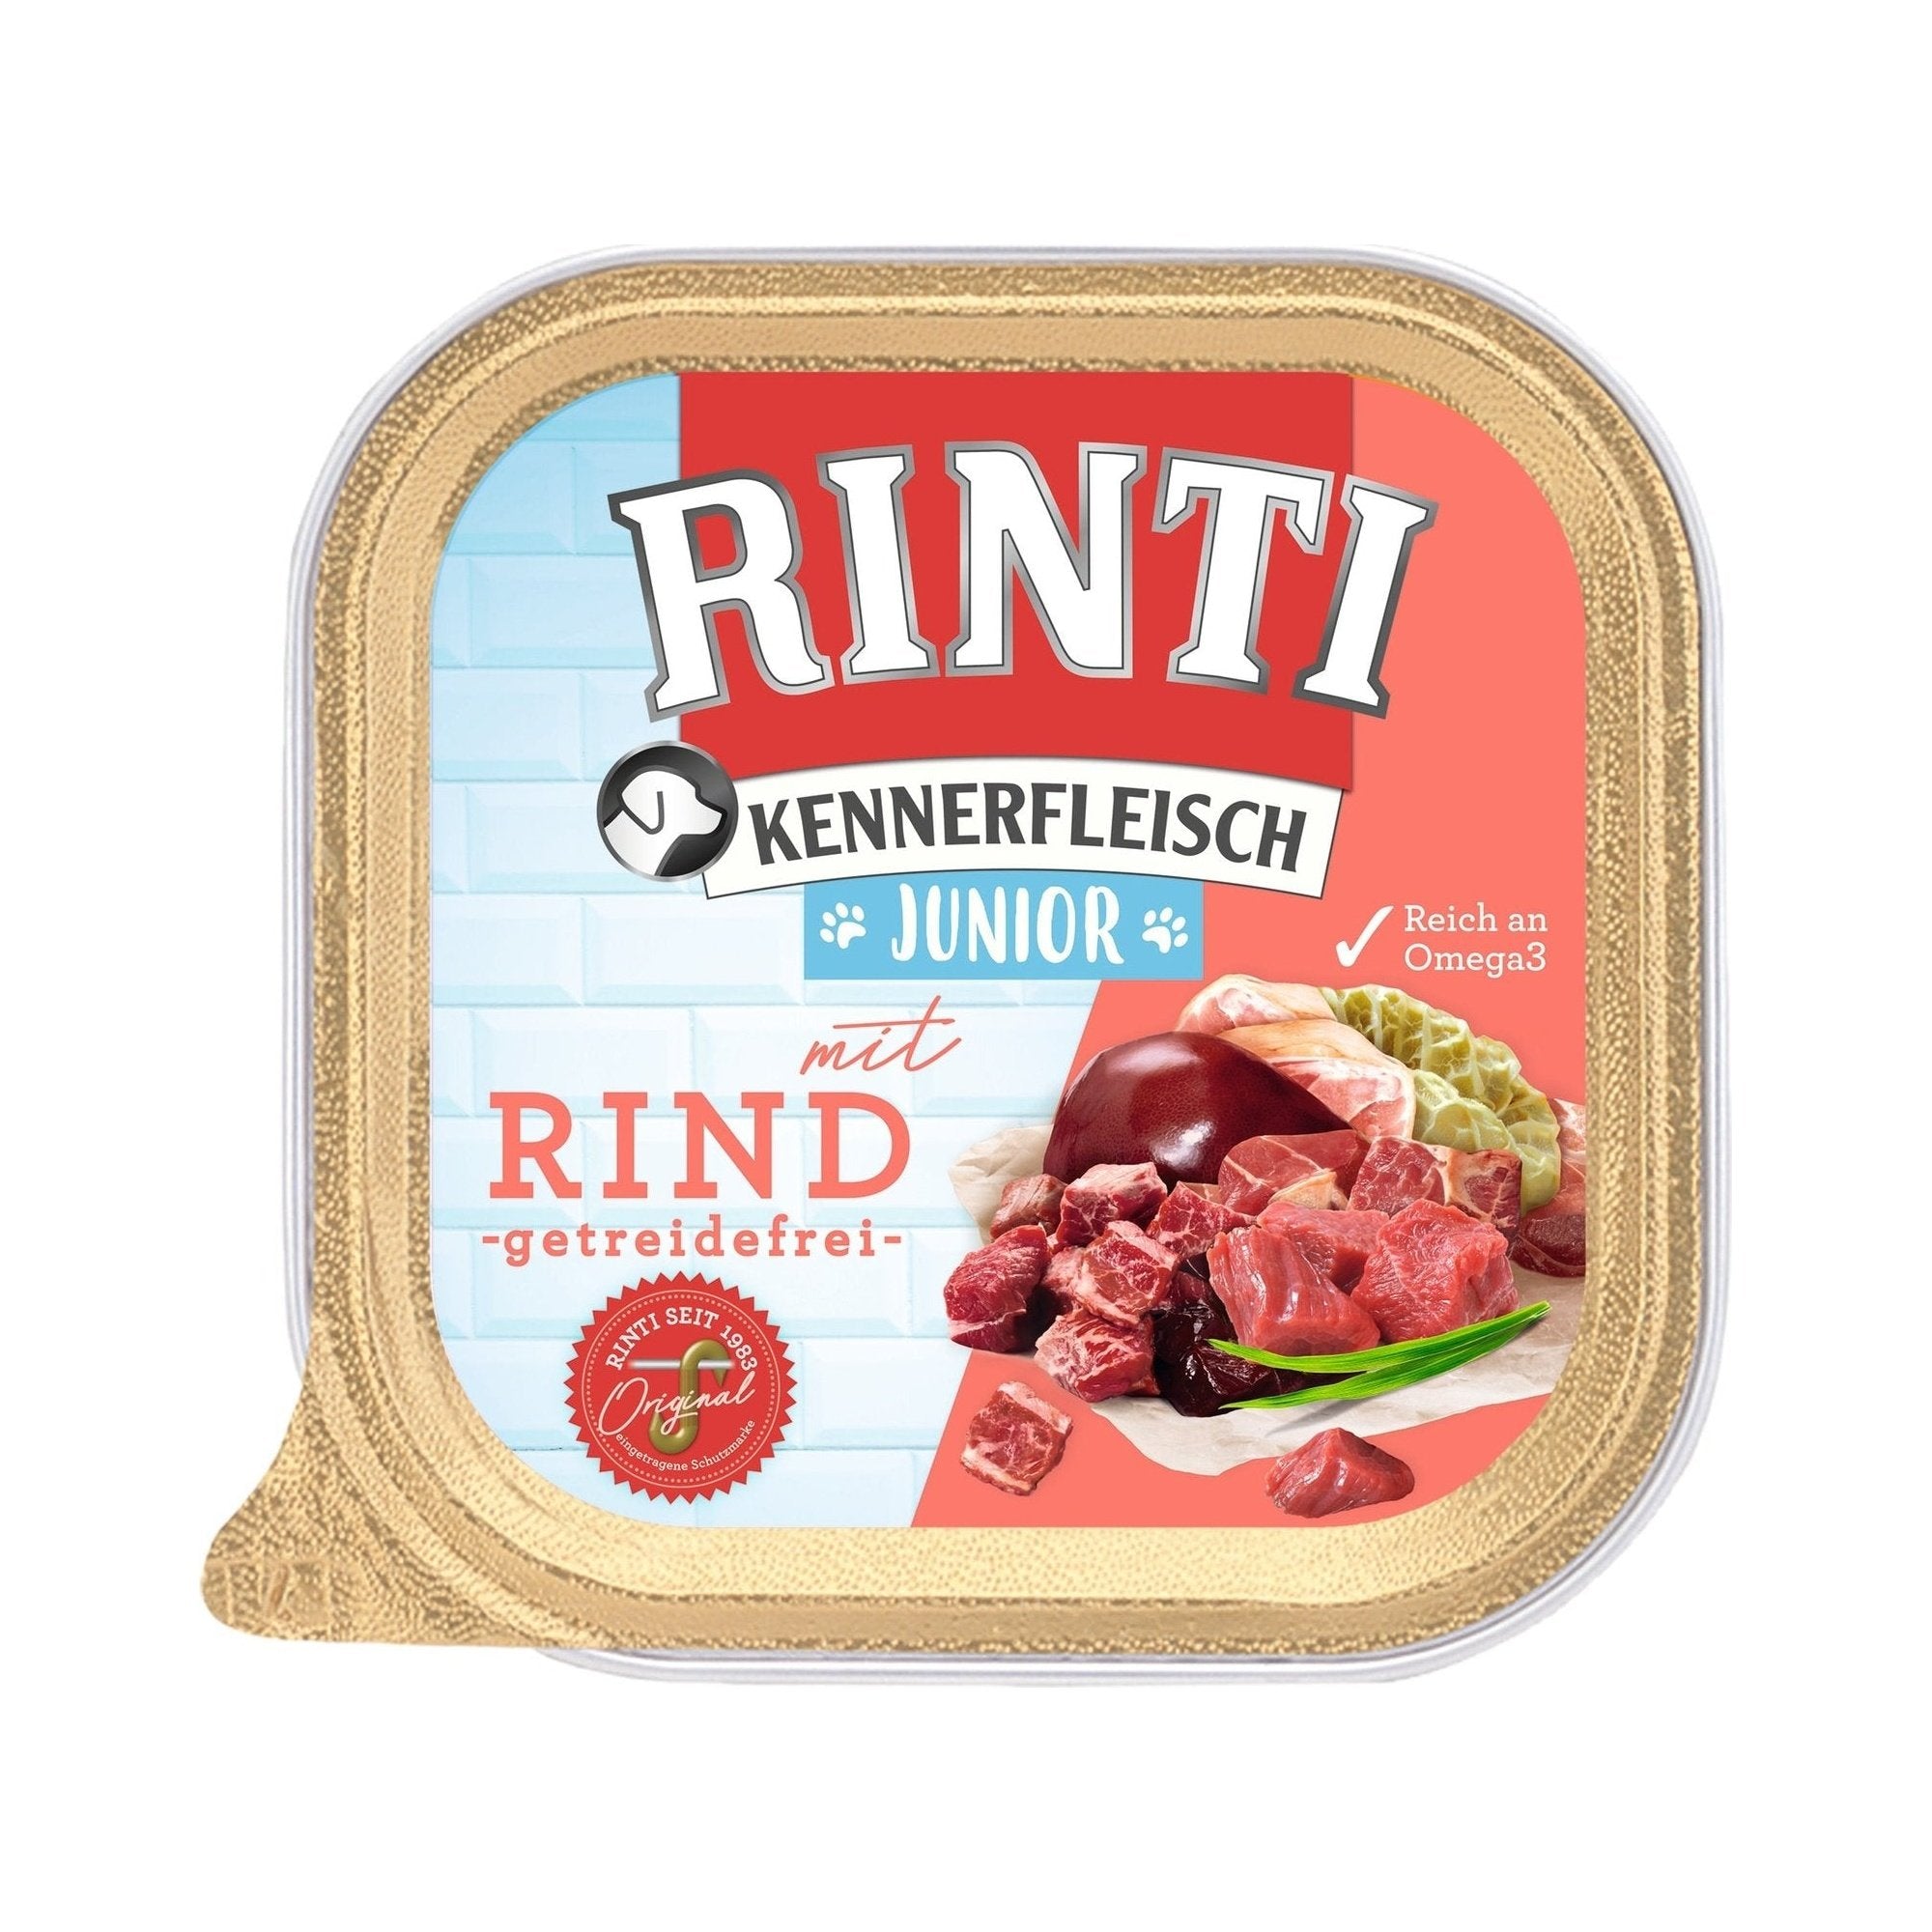 Artikel mit dem Namen Rinti Kennerfleisch Plus Junior mit Rind im Shop von zoo.de , dem Onlineshop für nachhaltiges Hundefutter und Katzenfutter.